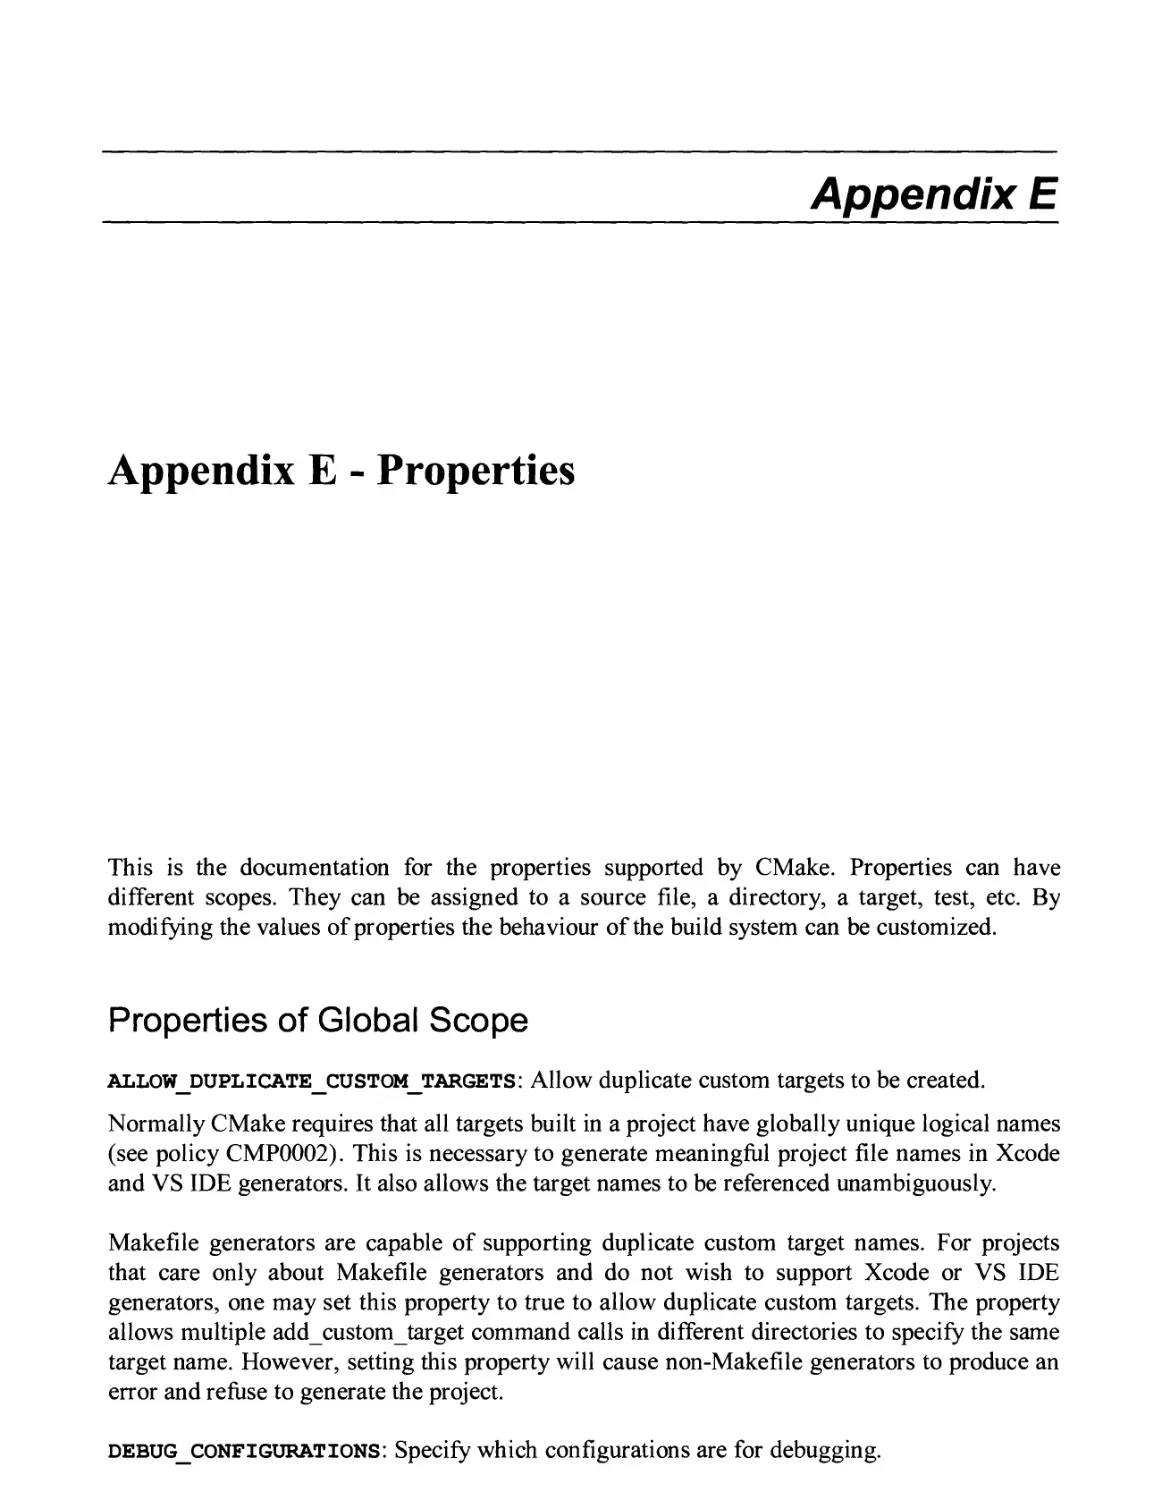 APPENDIX E - PROPERTIES